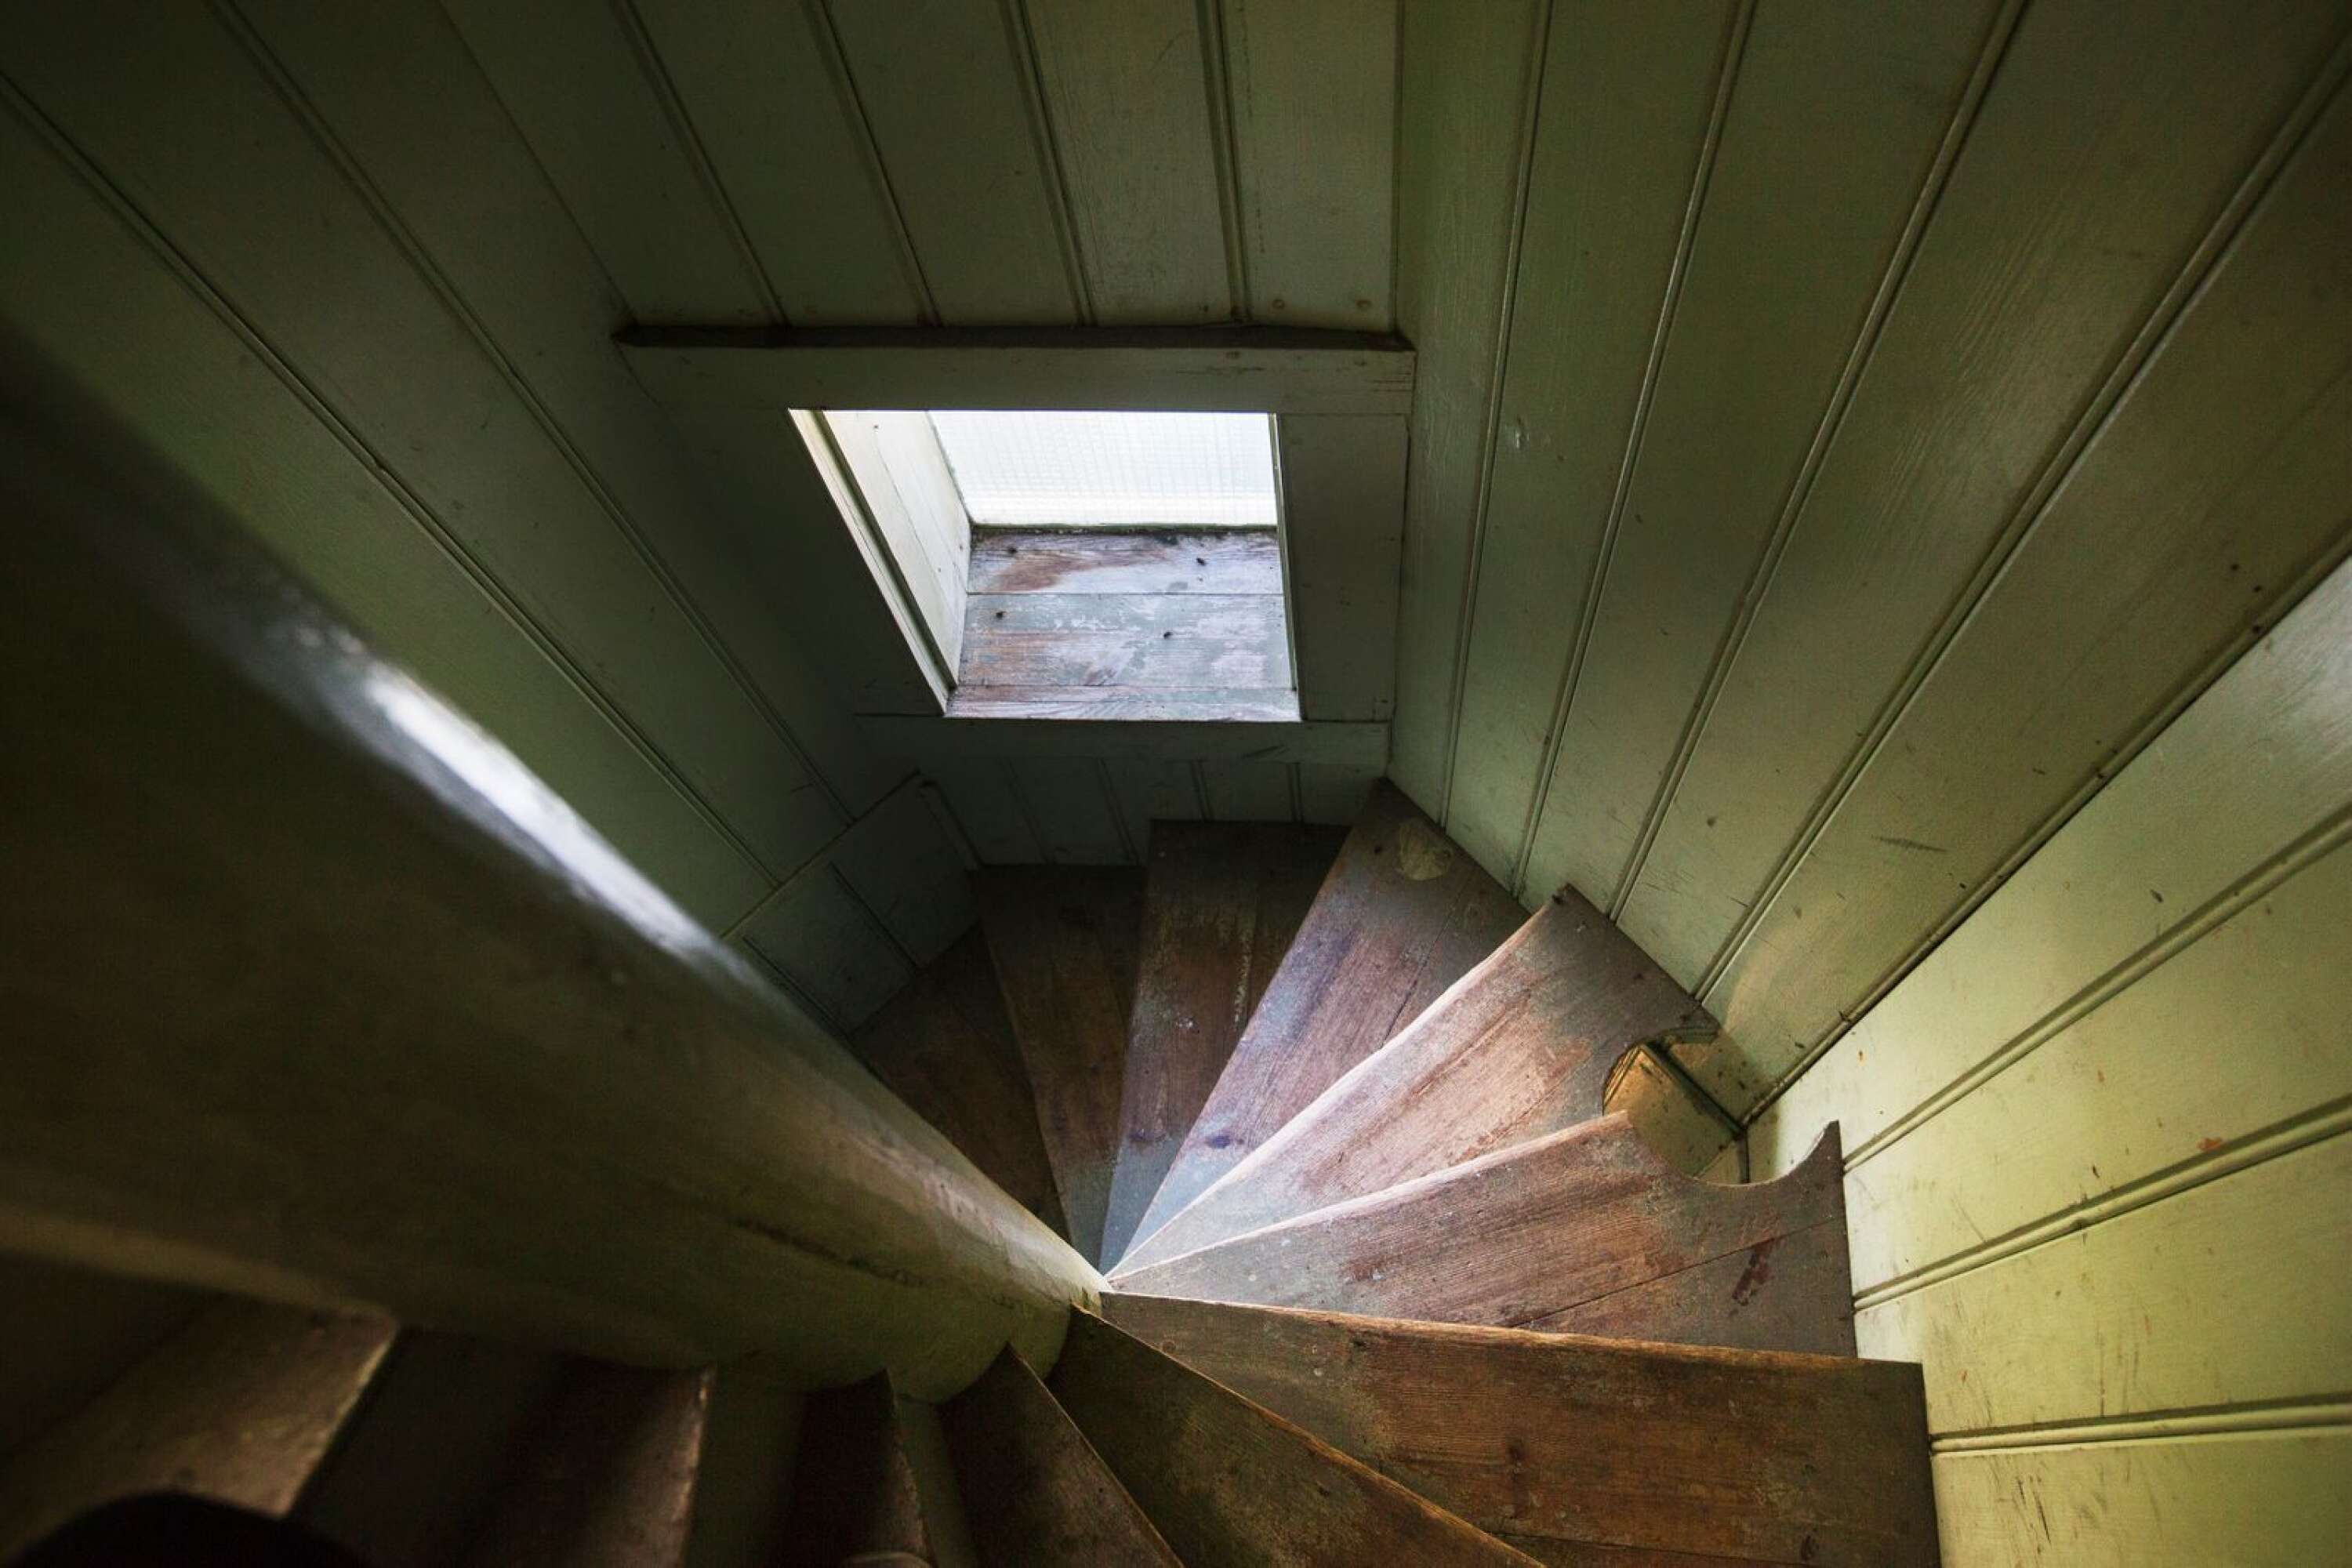 Till höger på bilden syns ett hål i trappan för fyrlampans lod, som fyrvaktarfamiljen behövde dra upp var fjärde timme, dygnet och året runt.